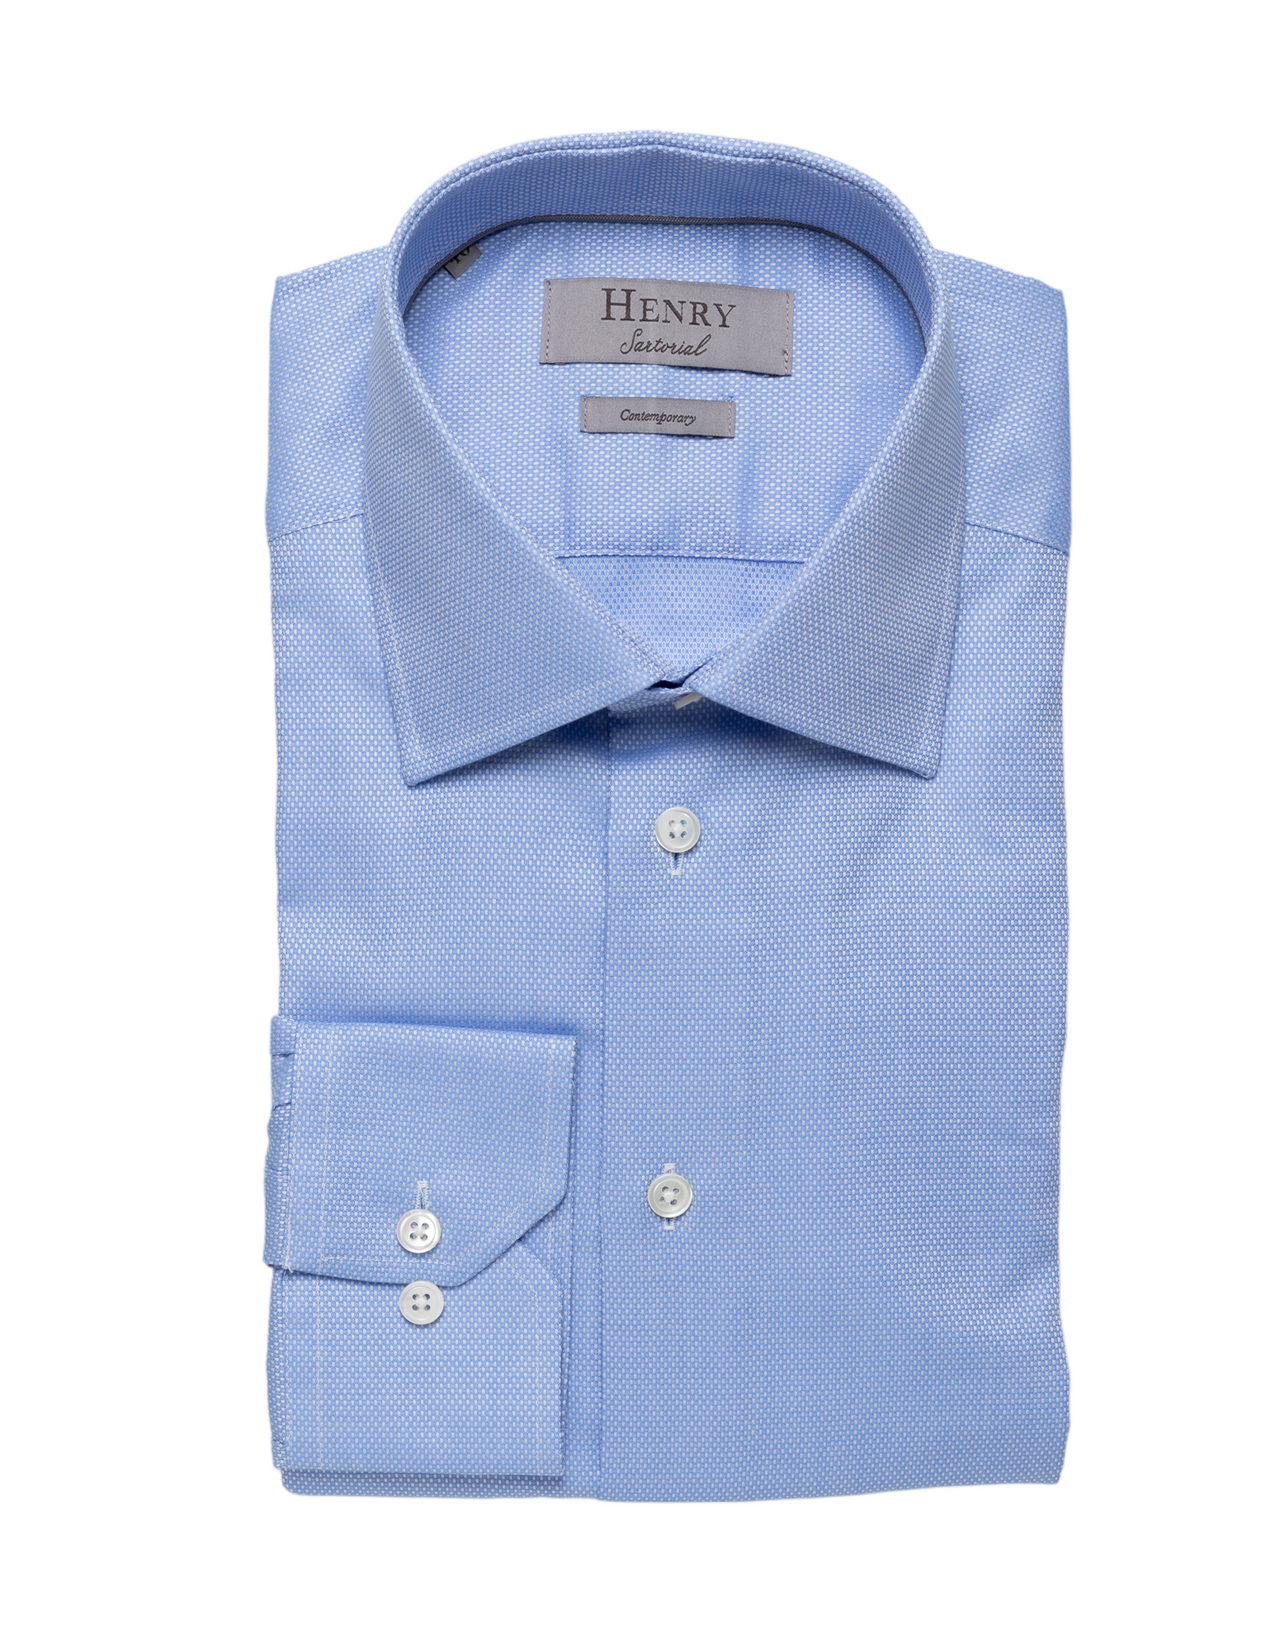 HENRY SARTORIAL Texture Shirt BLUE ROAN